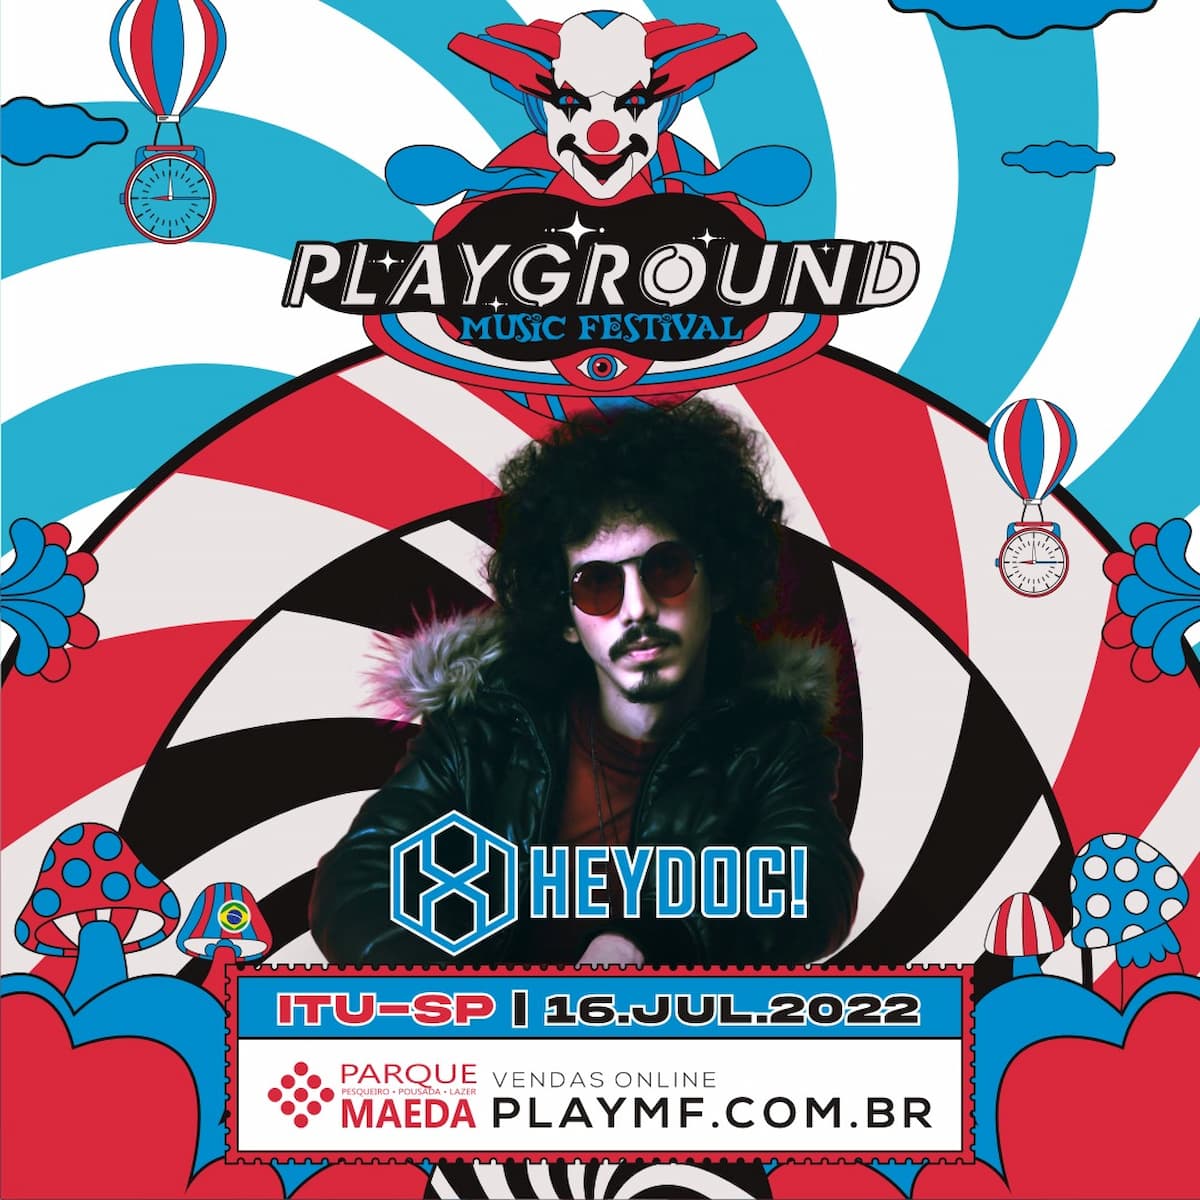 HeyDoc! se prepara para se apresentar no Playground Music Festival!